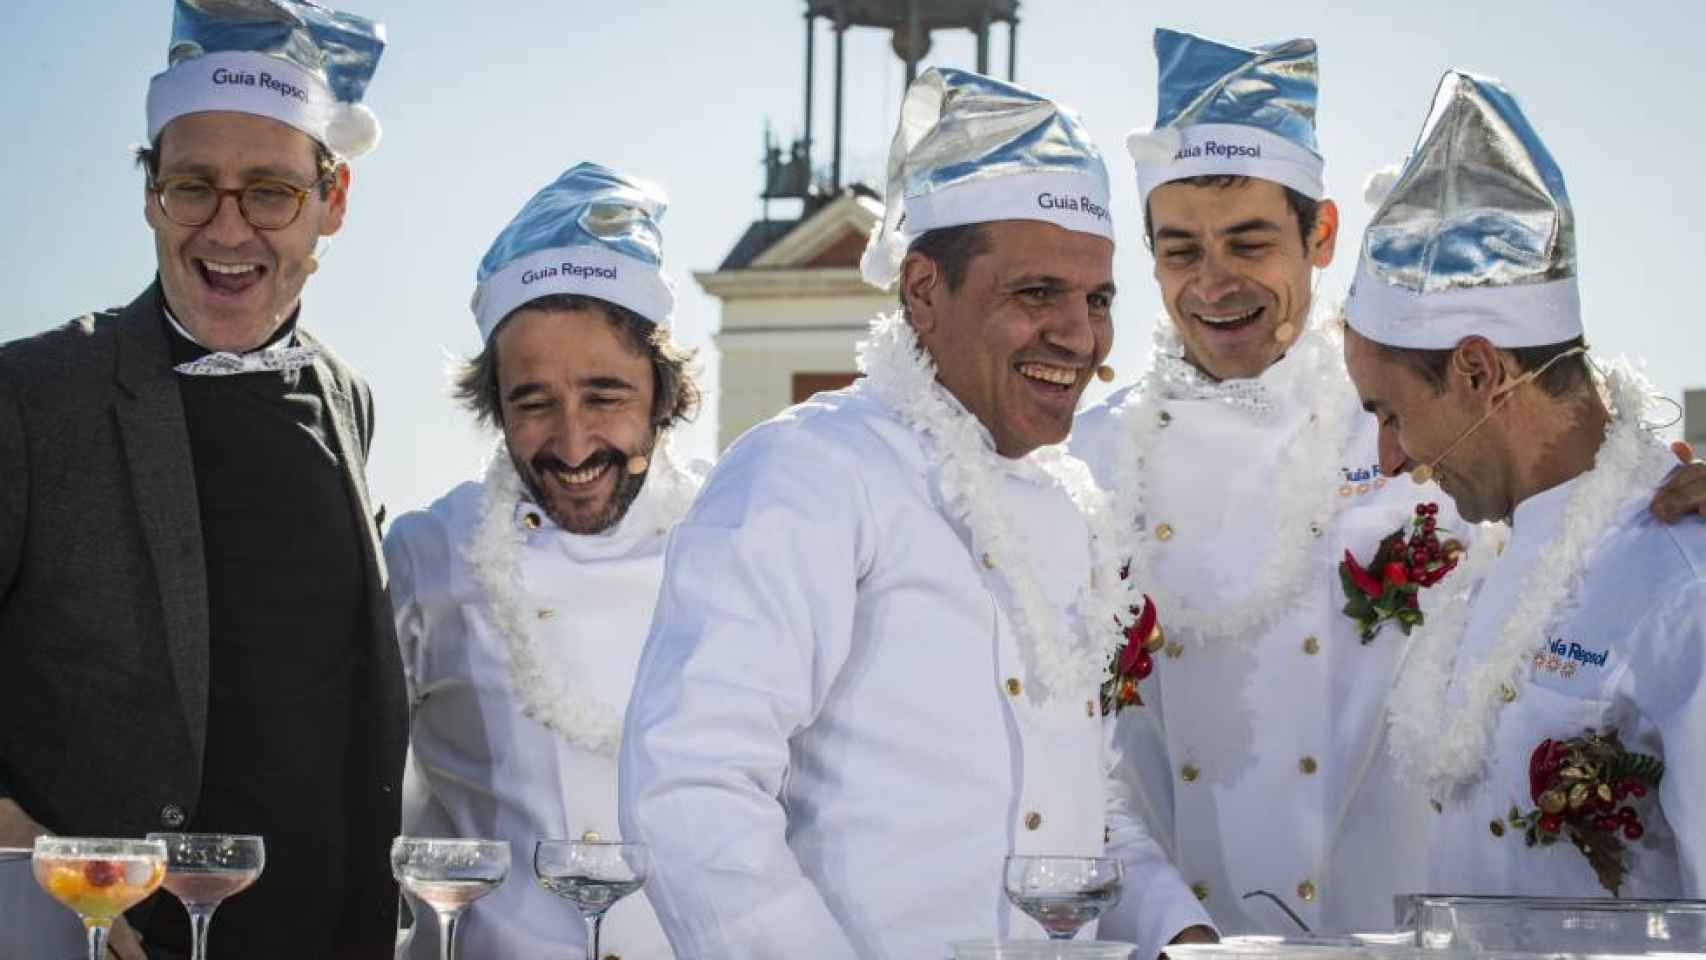 A la izquierda, el humorista Joaquín Reyes y los cocineros Diego Guerrero, Oriol Castro, Mateu Casañas y Eduard Xatruch en la presentación de la Guía Repsol